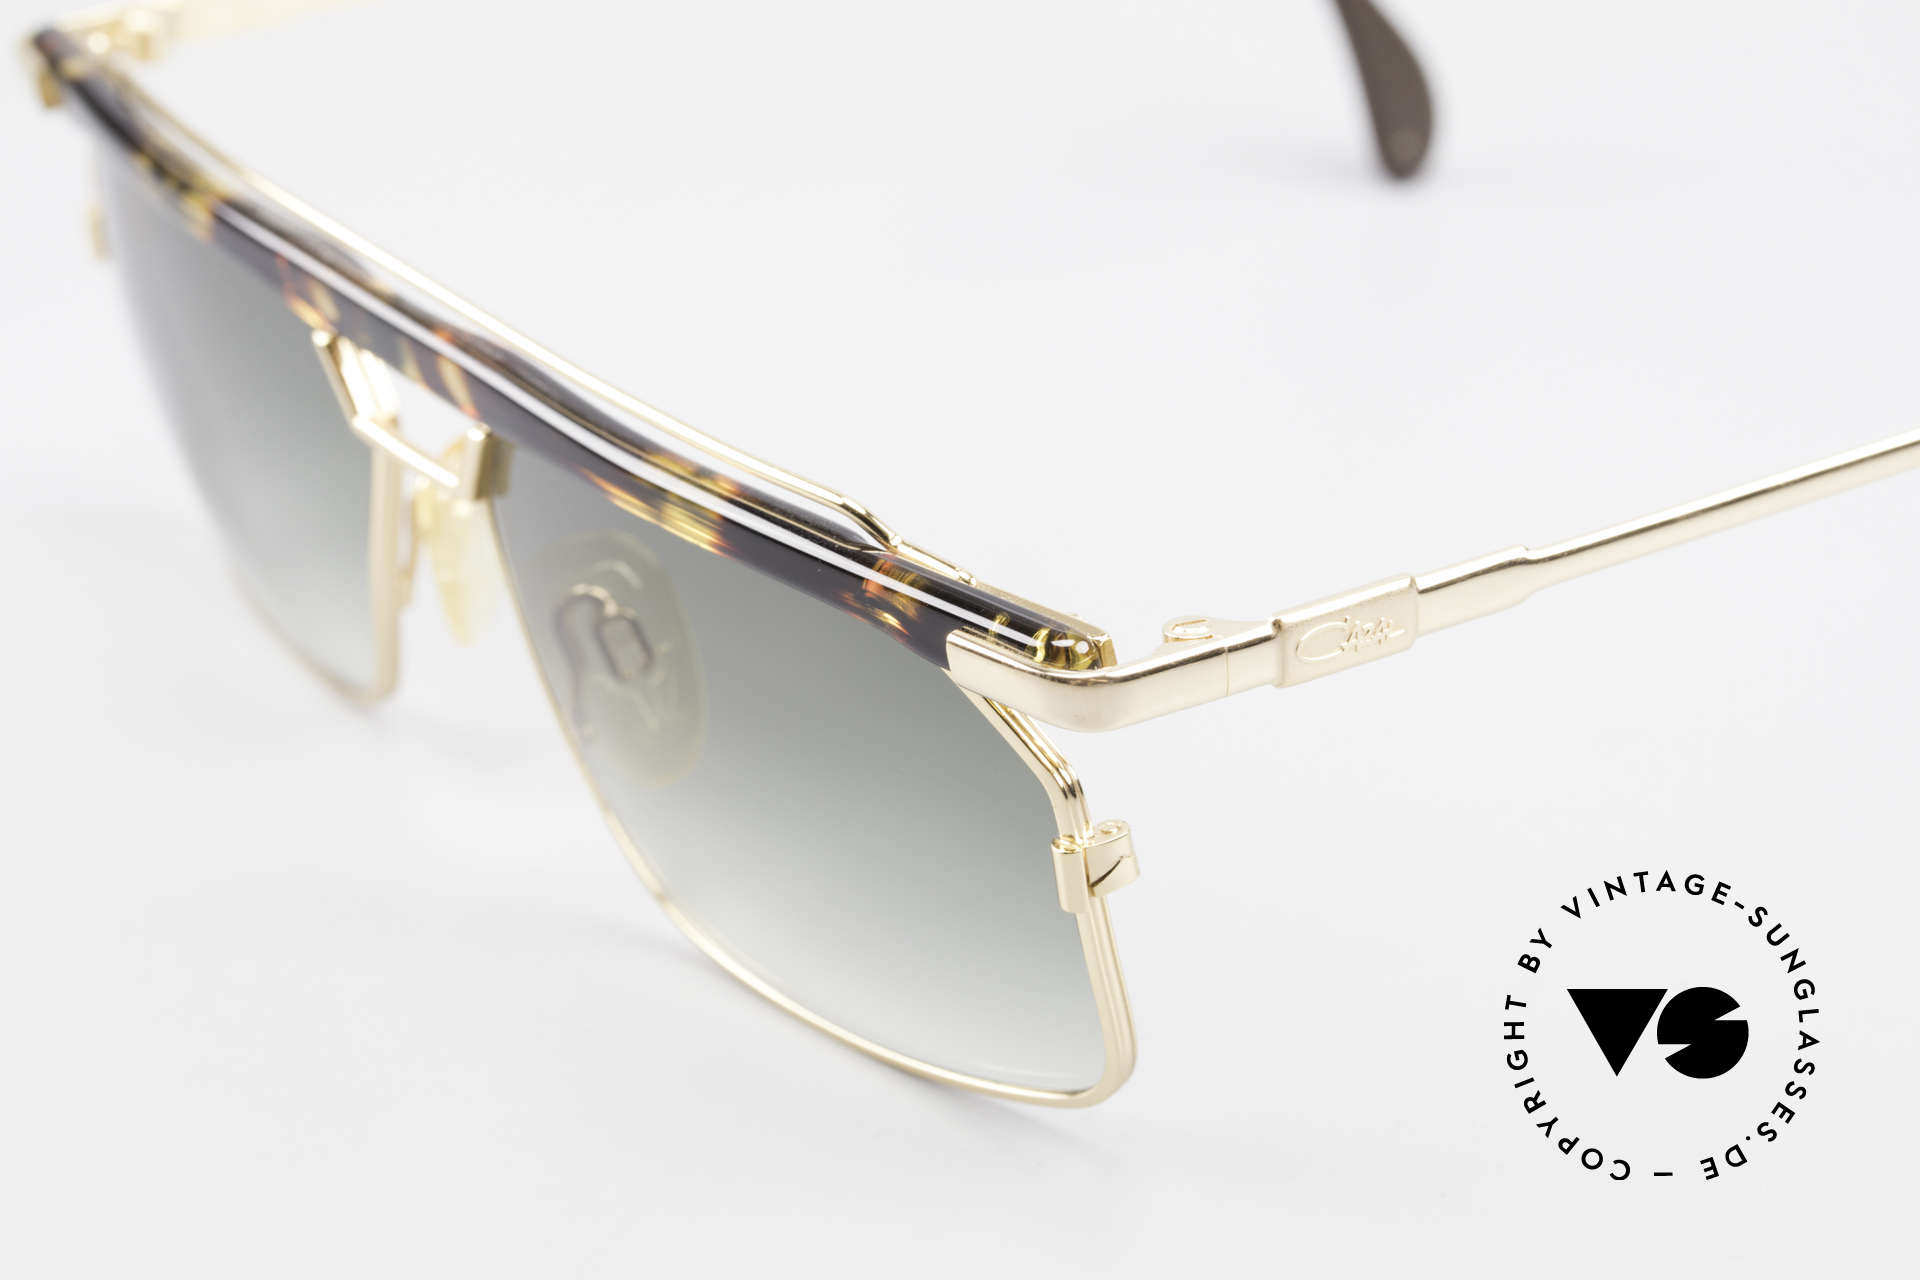 Cazal 752 90er Vintage Sonnenbrille Rar, tolle Metallarbeiten und außergewöhnlicher Look, Passend für Herren